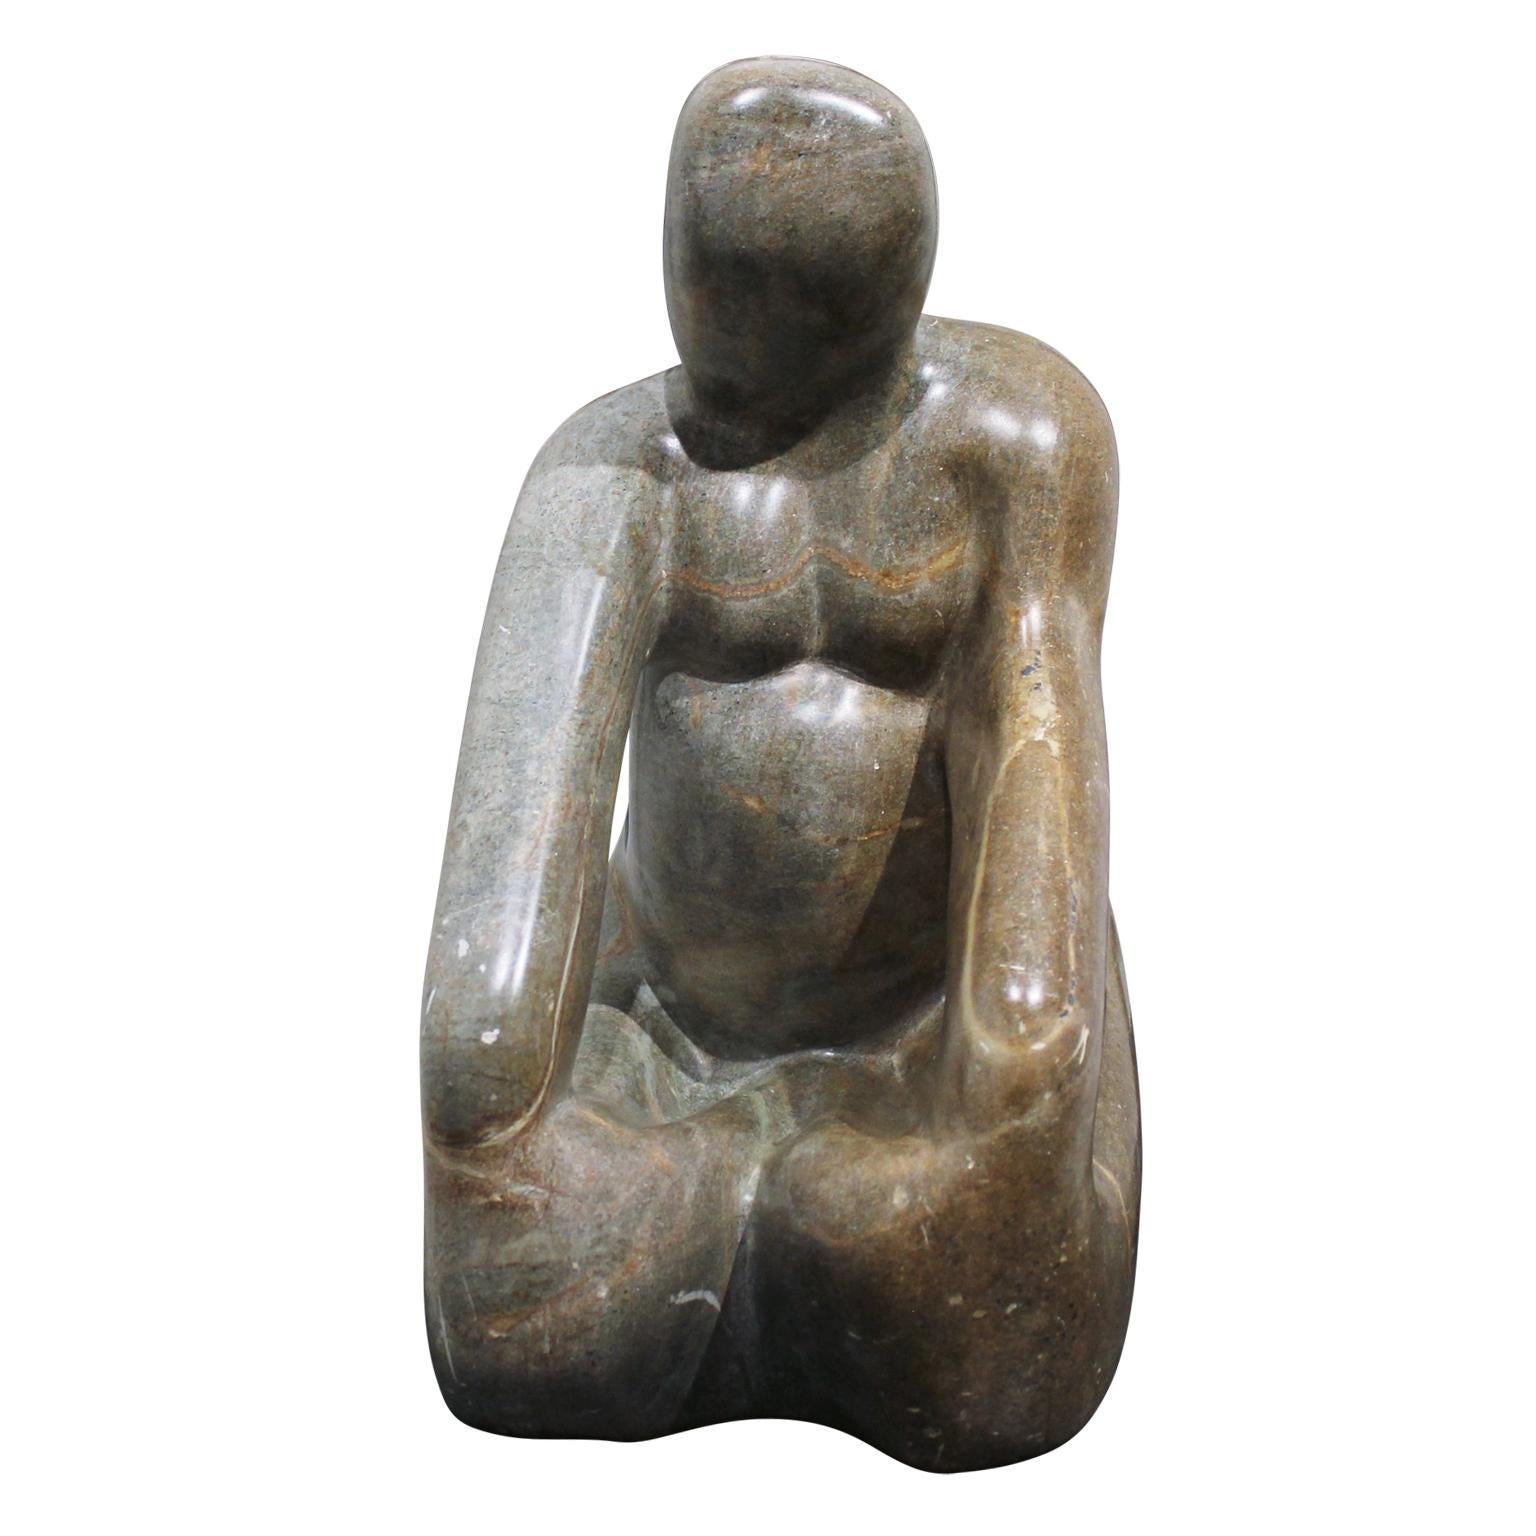 Luiz C. Faustino Figurative Sculpture - Seated Woman Stone Sculpture 